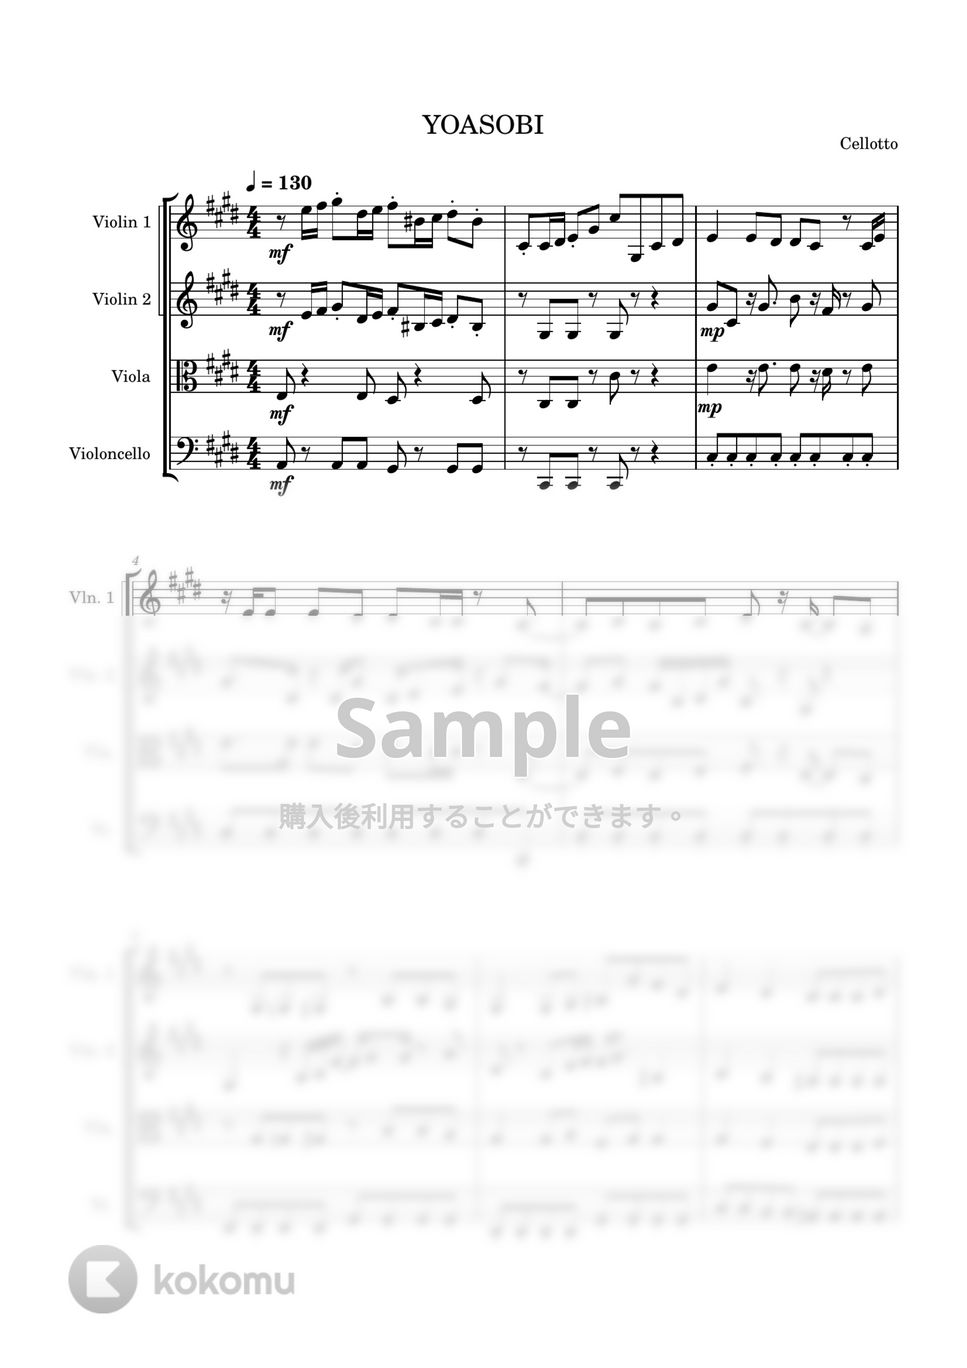 YOASOBI - 大正浪漫 (弦楽四重奏) by Cellotto